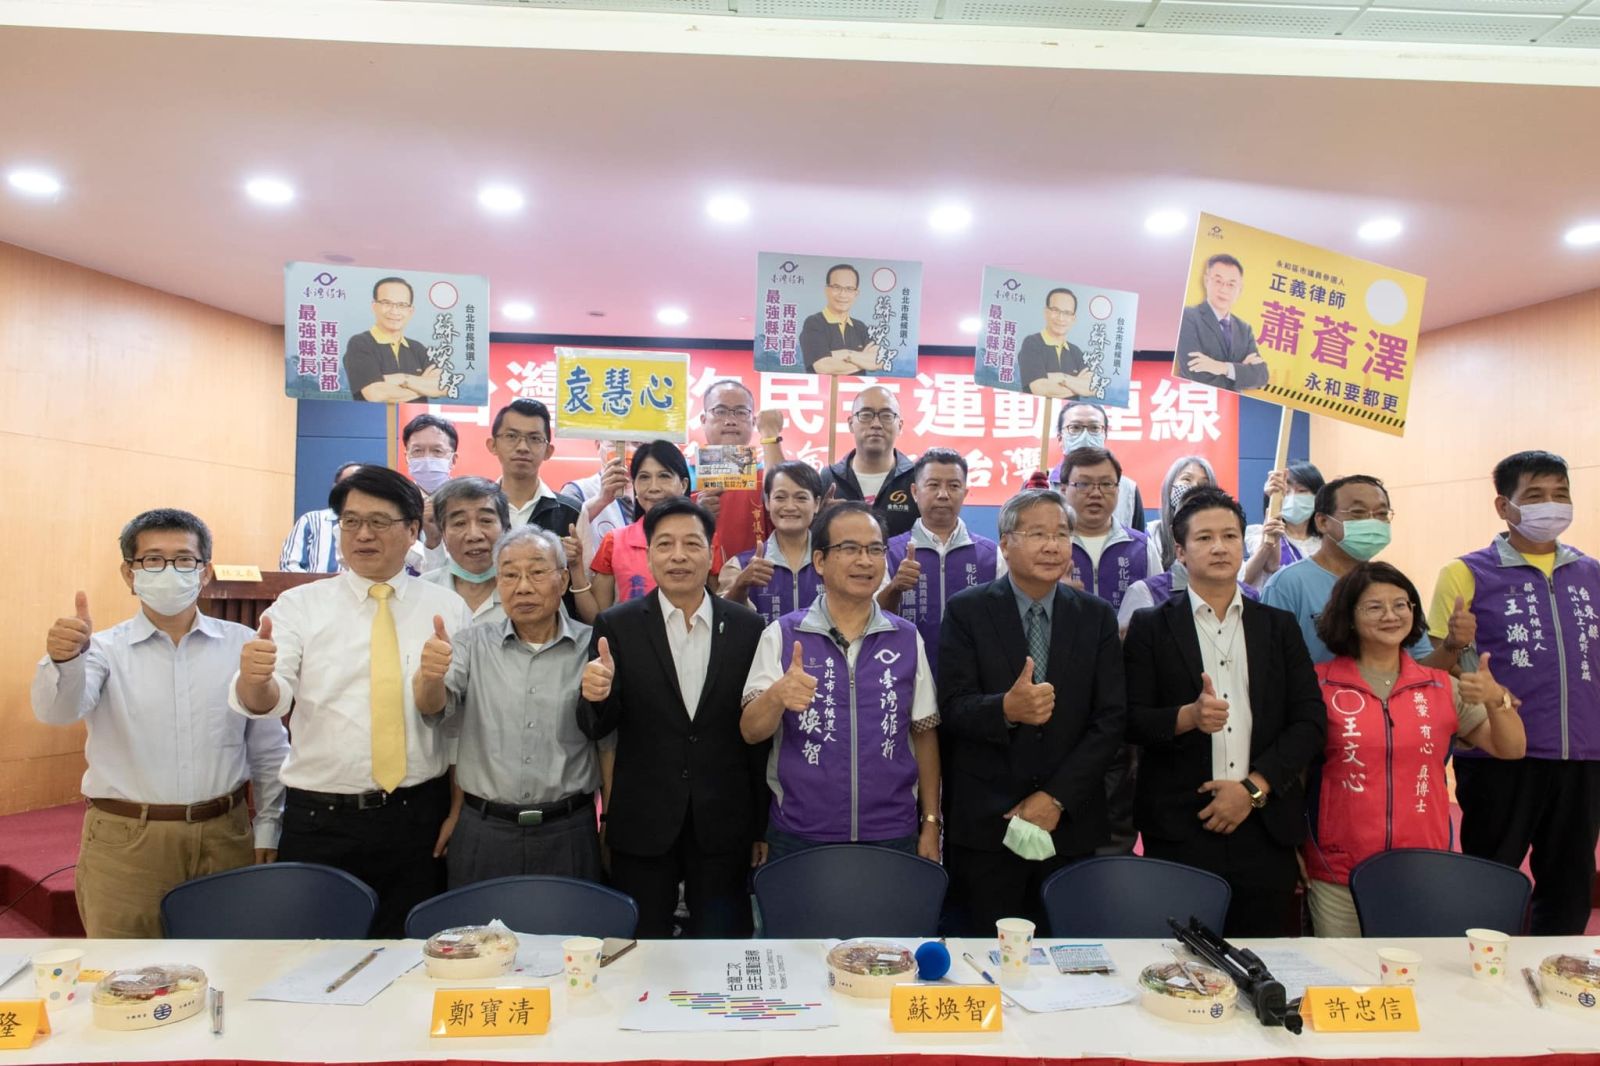 由蘇煥智、鄭寶清與許忠信發起的「台灣二次民主運動連線」30日成立，號召「再次政黨輪替」。翻攝蘇煥智臉書